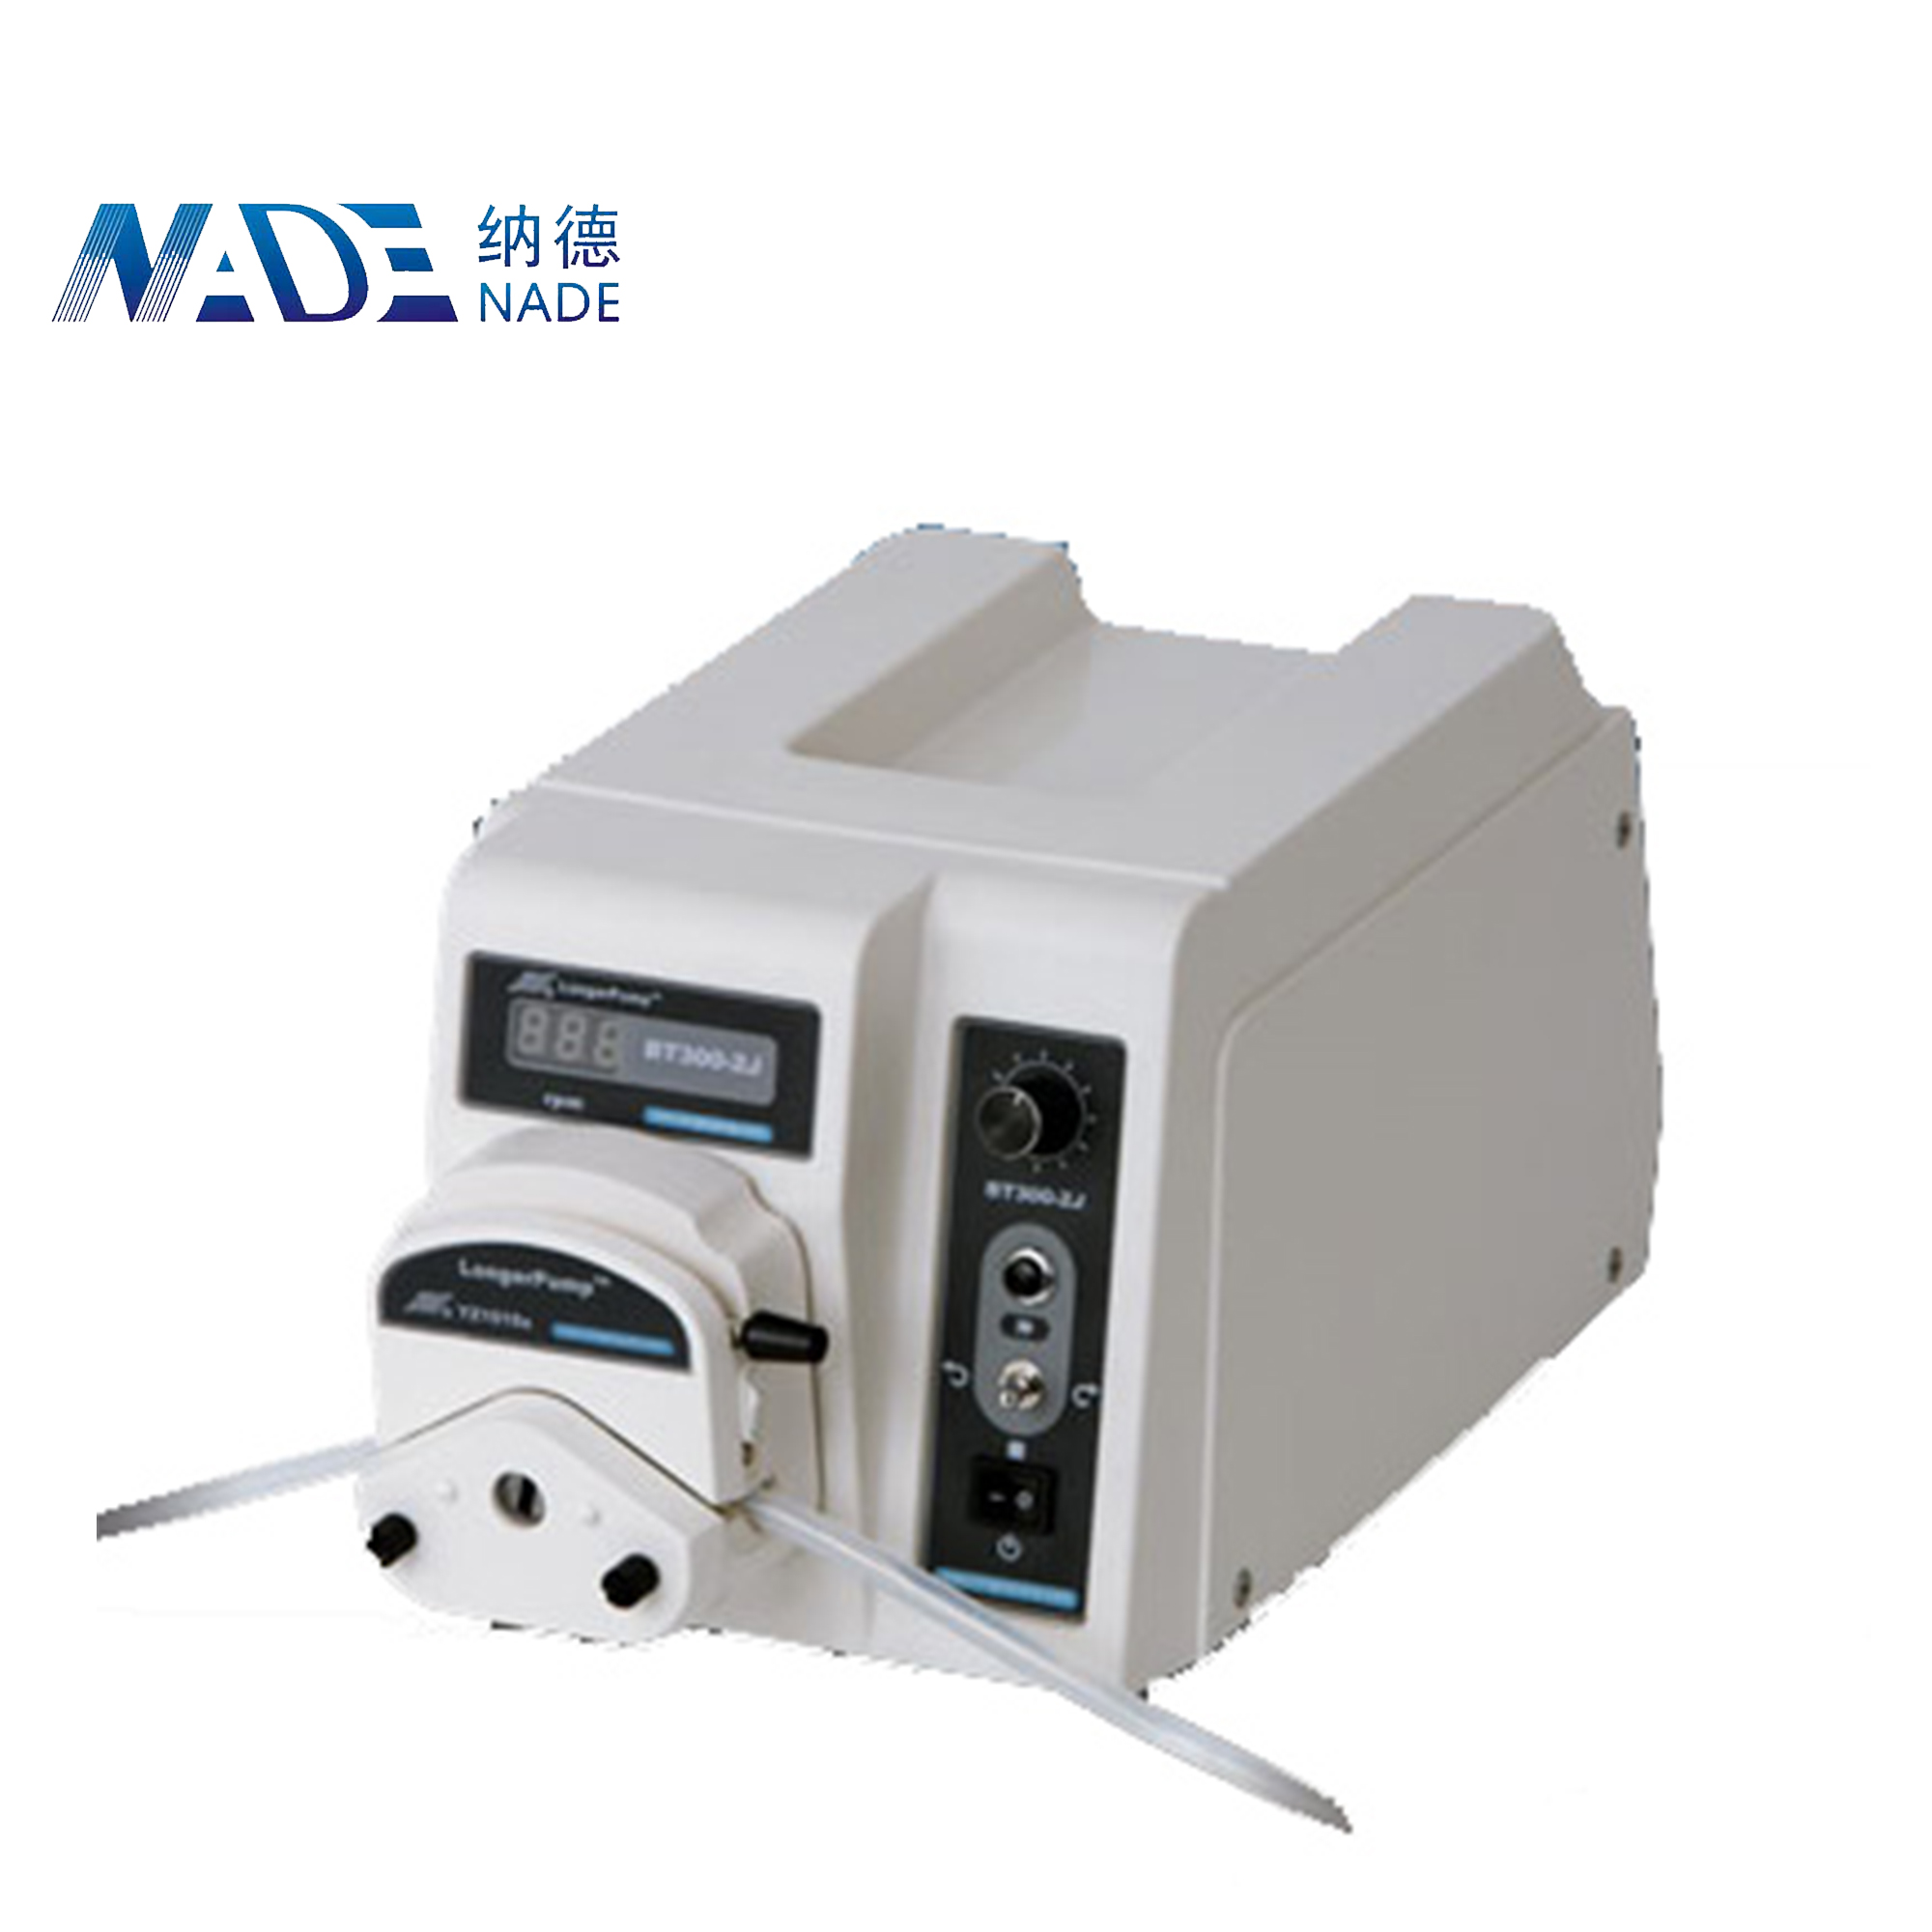 Nade Pump Medium Flow Rate Peristaltic Pump BT300-2J